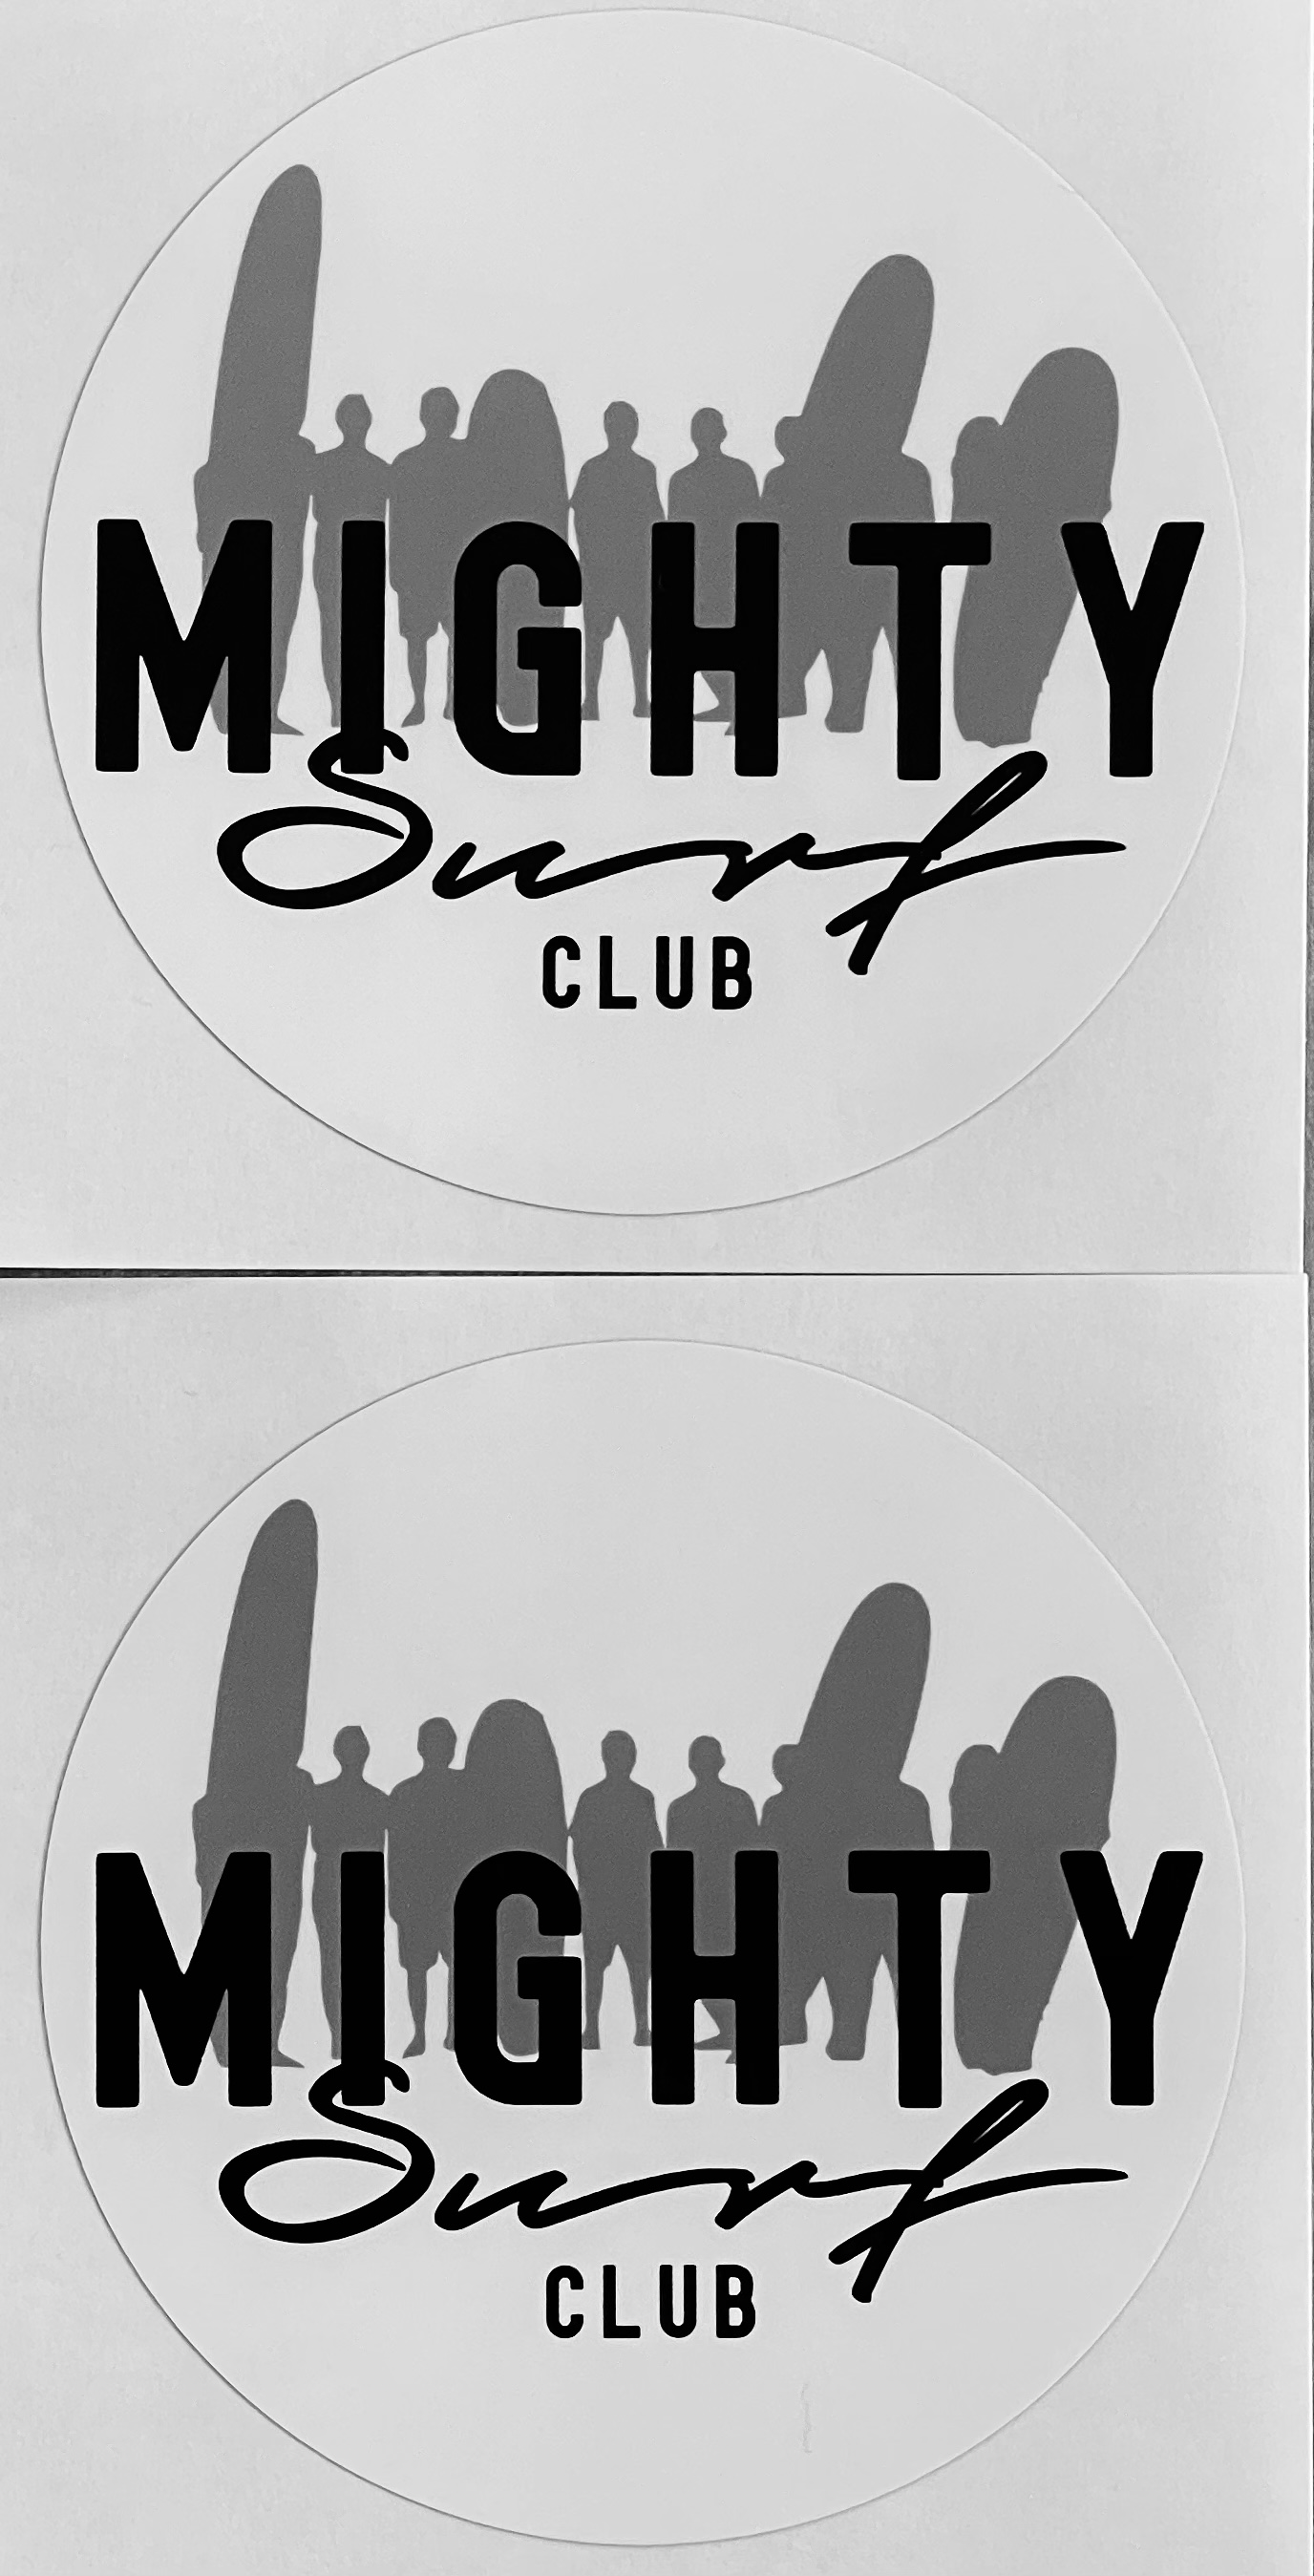 Mightysurfclub ステッカー